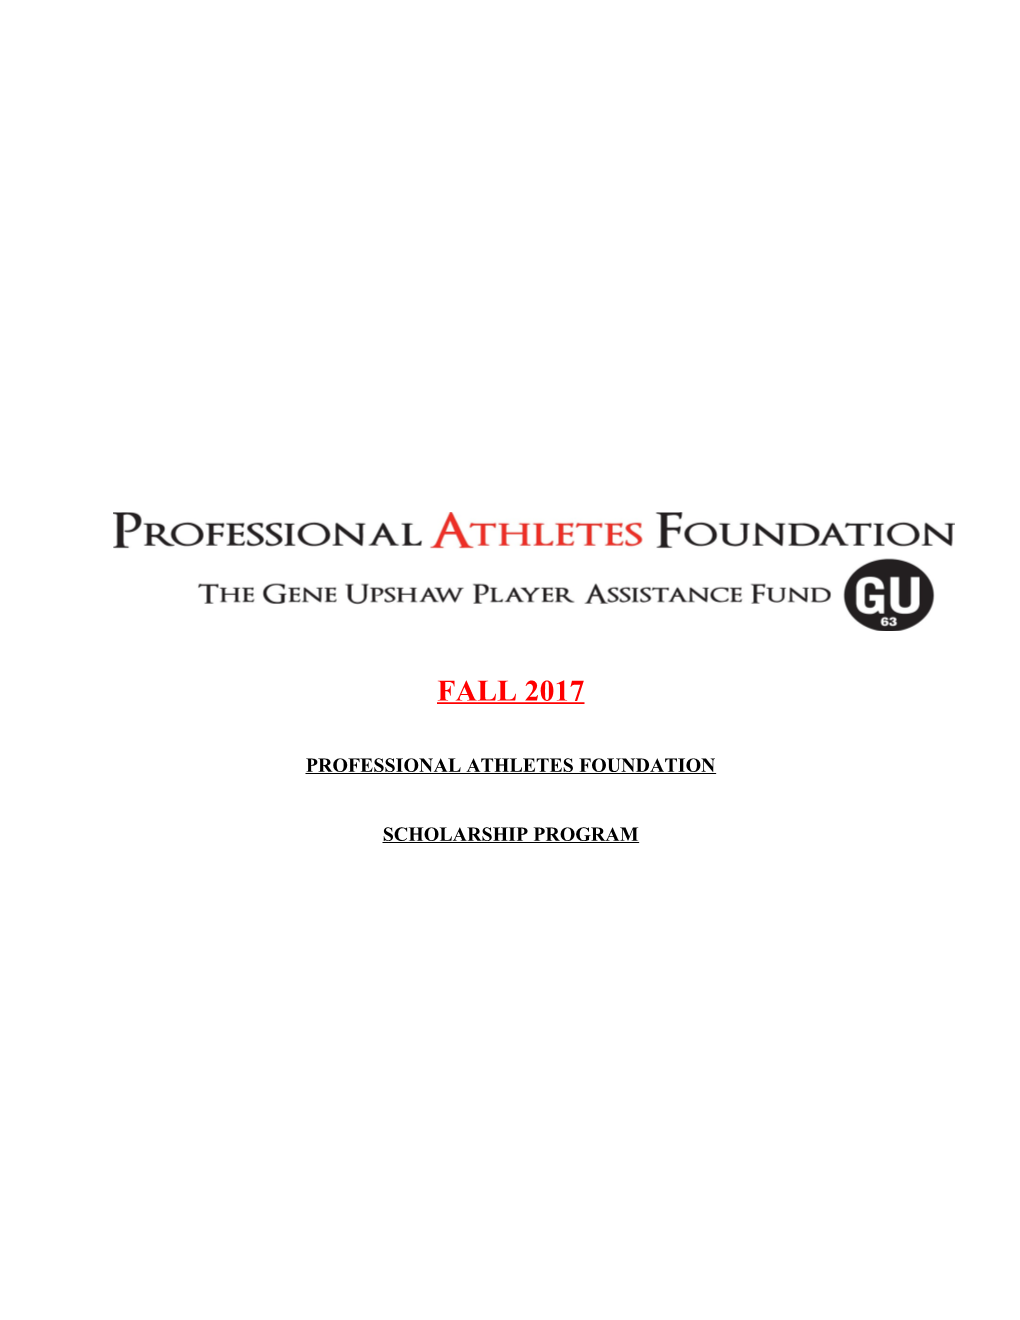 Professional Athletes Foundation